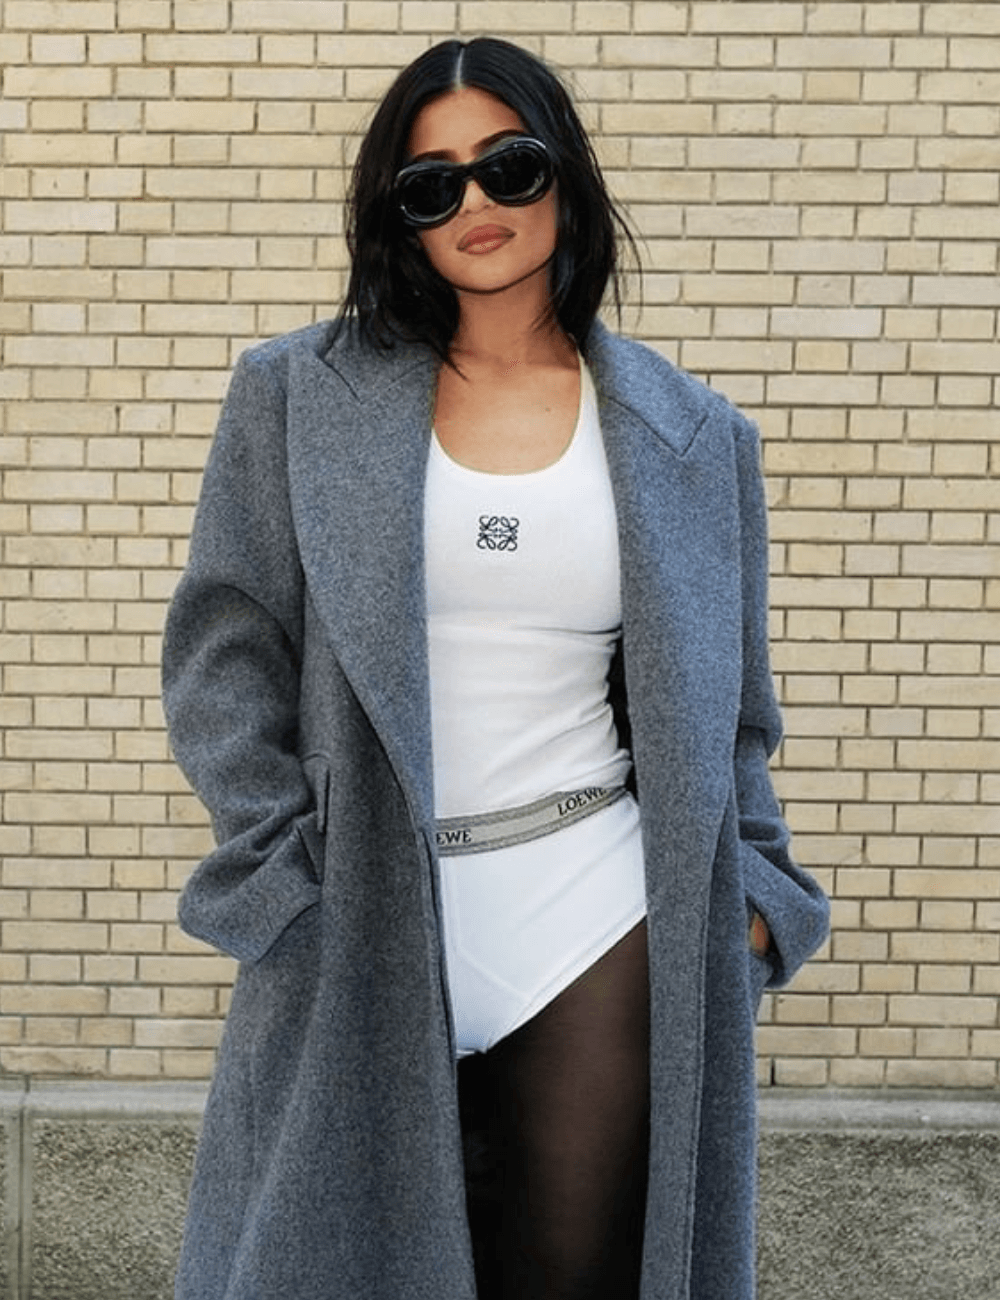 Kylie Jenner - micro shorts branco, regata, scarpin, sobretudo oversized cinza e óculos de sol - Principais tendências 2023 - outono - mulher morena em pé na rua usando óculos de sol - https://stealthelook.com.br